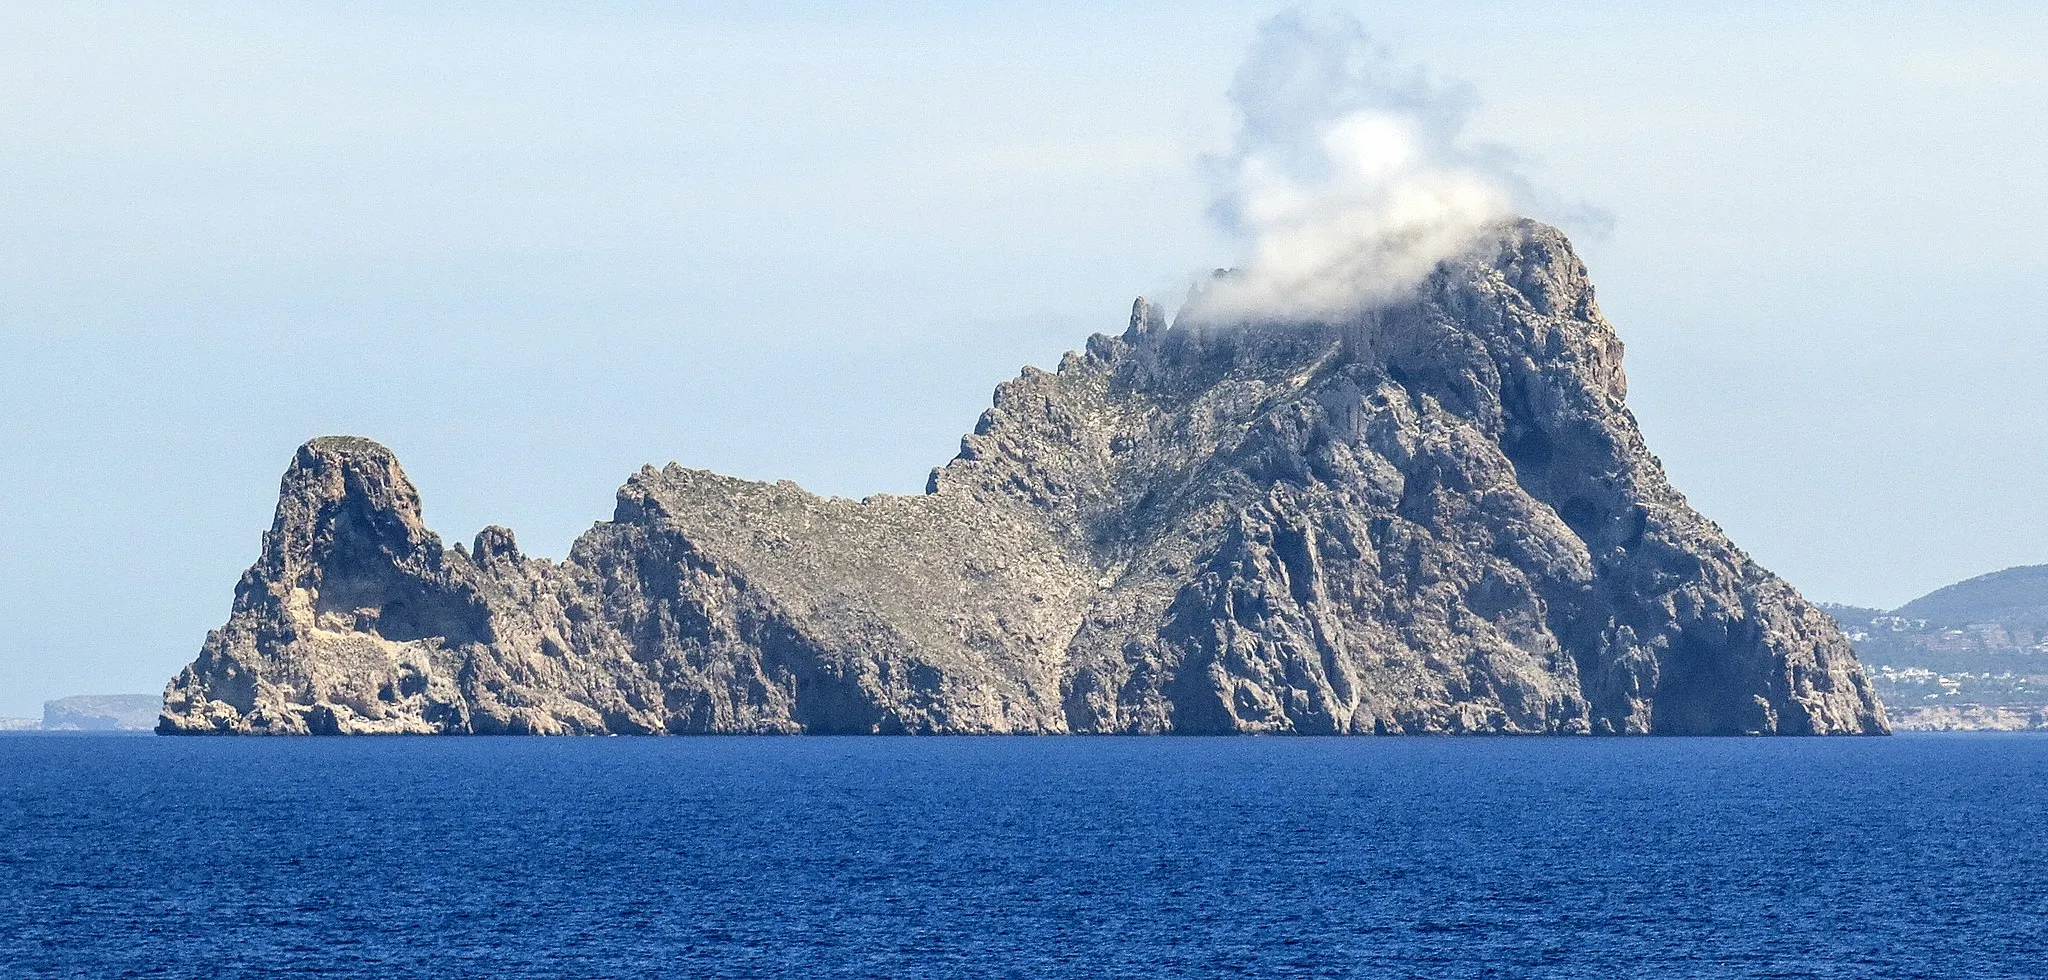 Photo showing: Es Vedrà és un illot que es troba a 2 km de la costa occidental d'Eivissa, davant de Cala d'Hort. Pertany al municipi de Sant Josep de sa Talaia i no està habitat. Té una altitud de 382 m, i al seu costat es troba Es Vedranell, de 128 m. Els dos illots, juntament amb els illots de Ponent (les illes Bledes, l'illa de s'Espartar, l'illa des Bosc i l'illa de sa Conillera), formen part de les Reserves naturals des Vedrà, es Vedranell i els illots de Ponent), protegides pel Decret 24/2002 des de l'any 2002. (Viquipèdia)